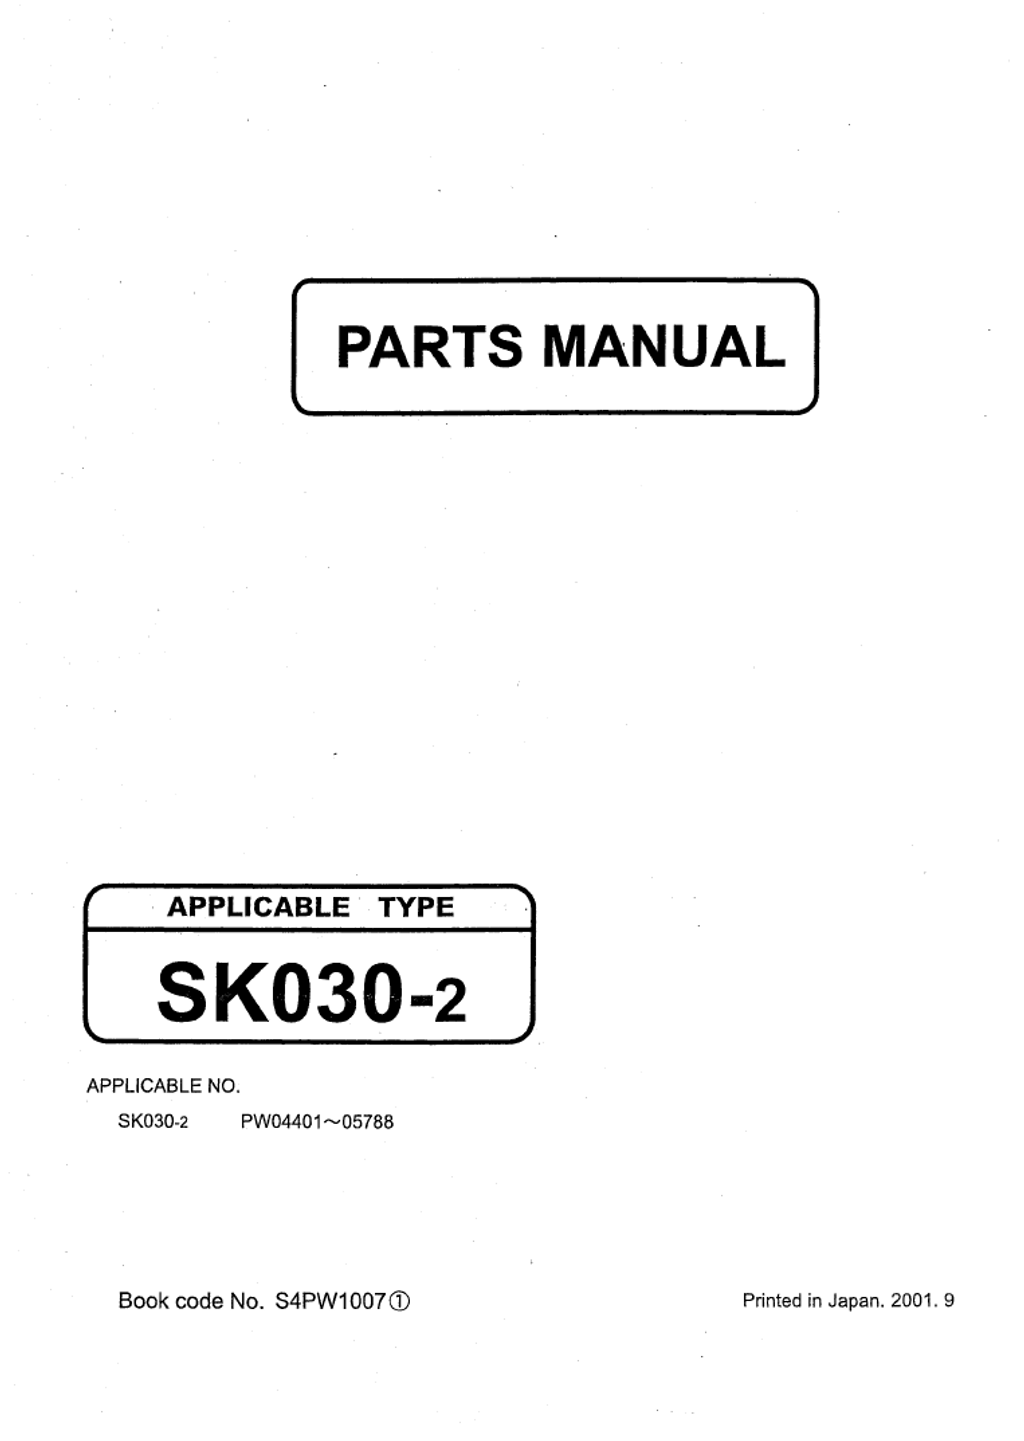 EPC16-Kobelco Parts Manual_08